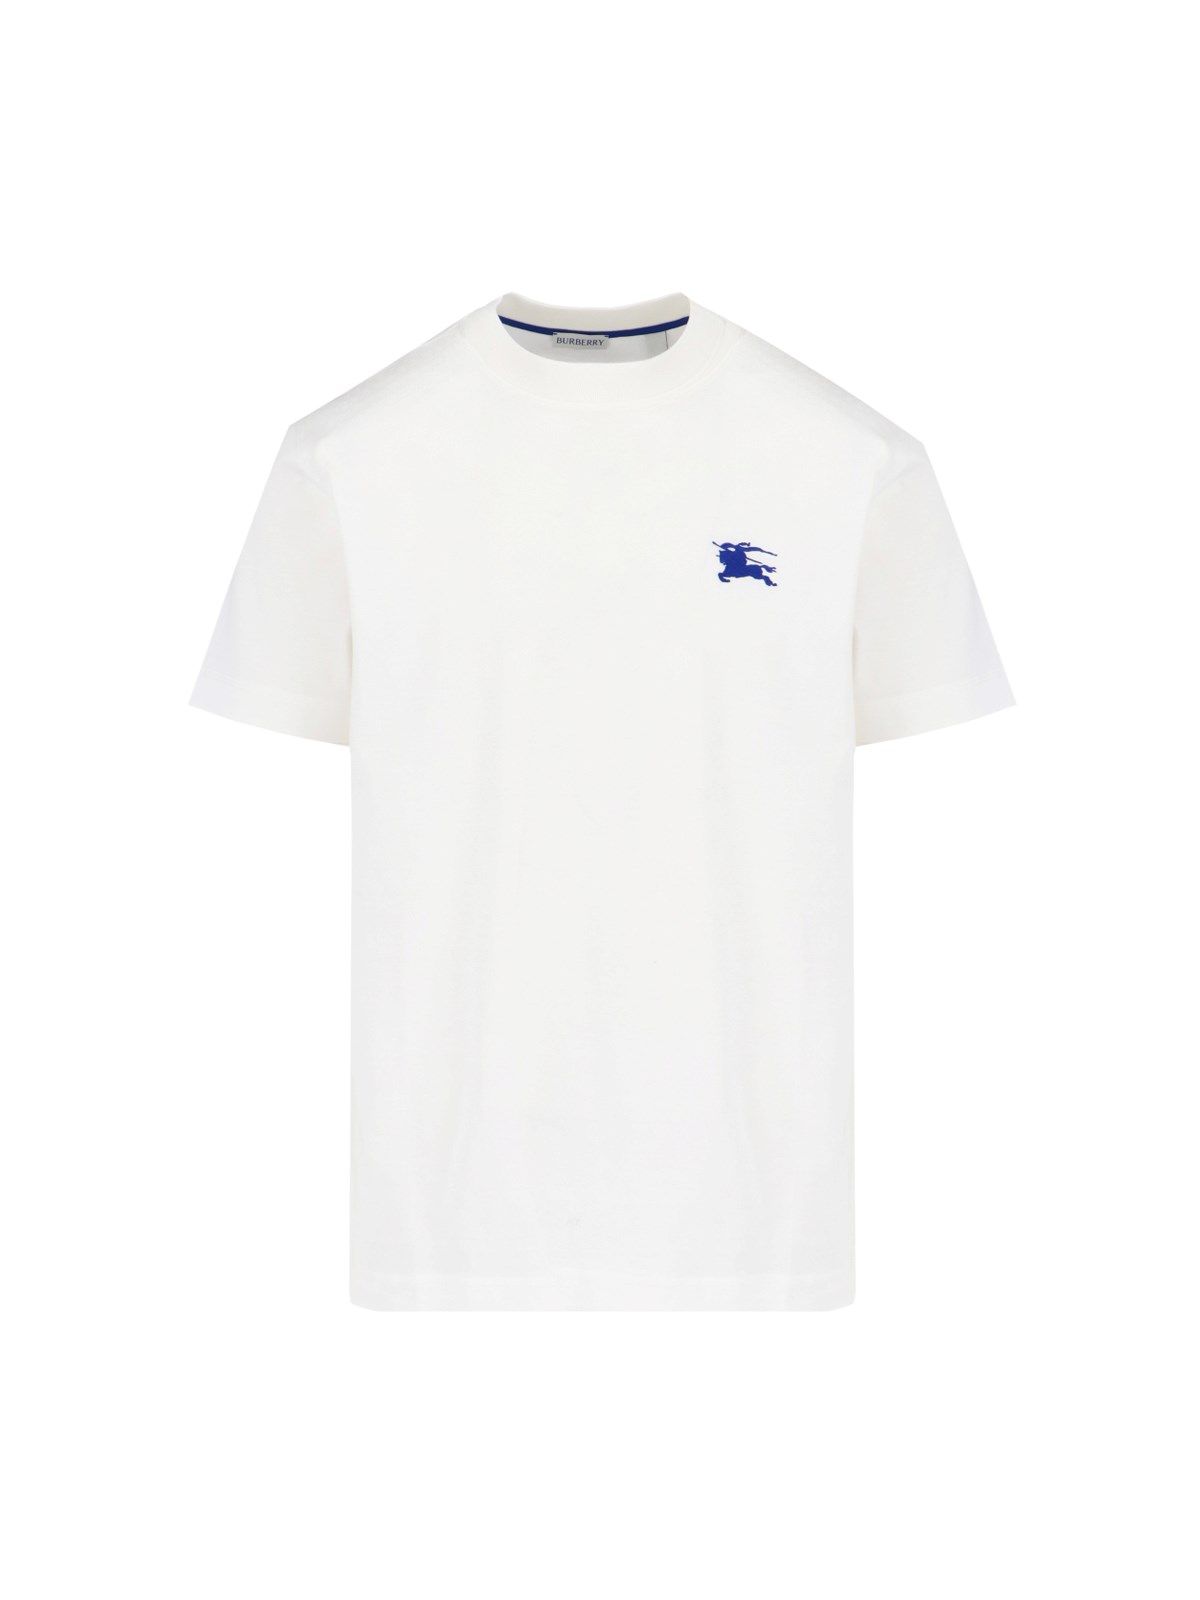 Burberry "ekd" Logo T-shirt In White